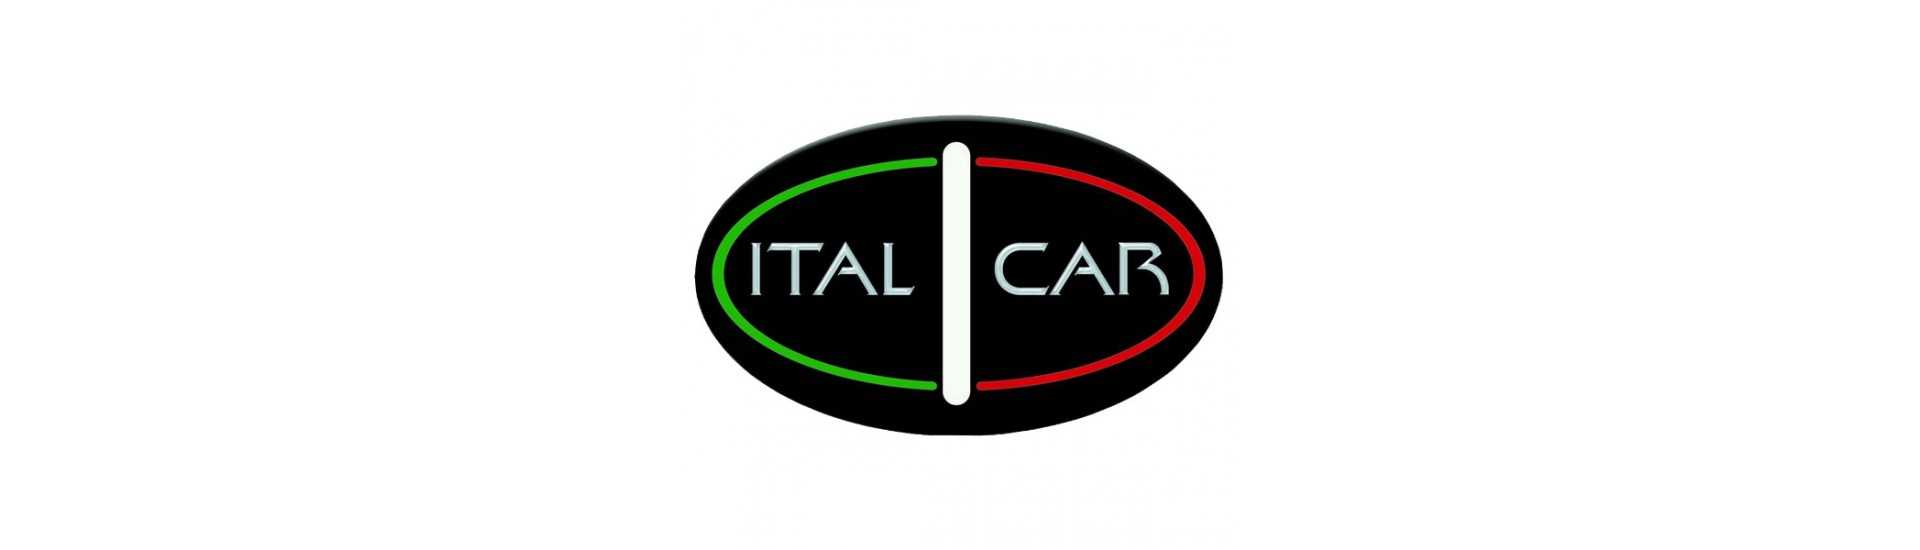 Pausa al miglior prezzo per auto senza permesso Italcar